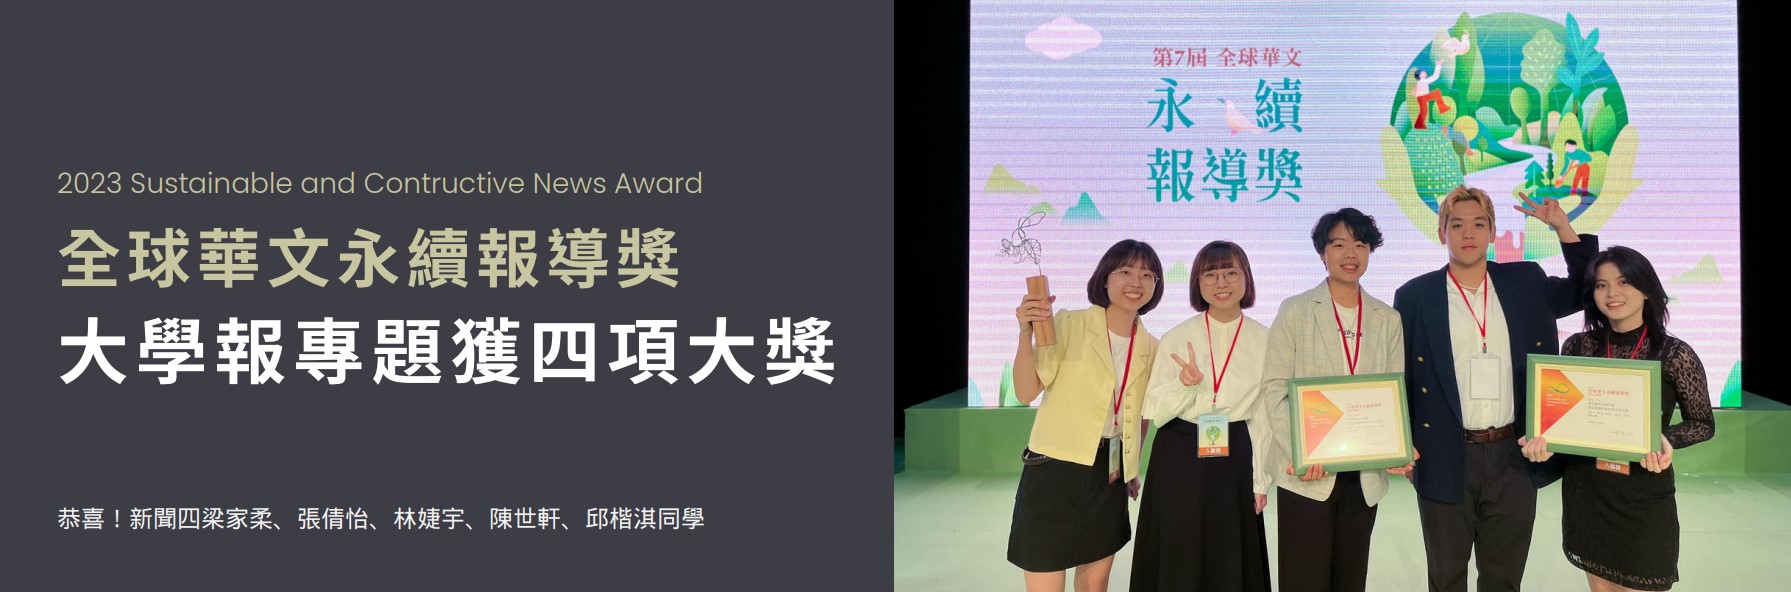 2023全球華文永續報導獎